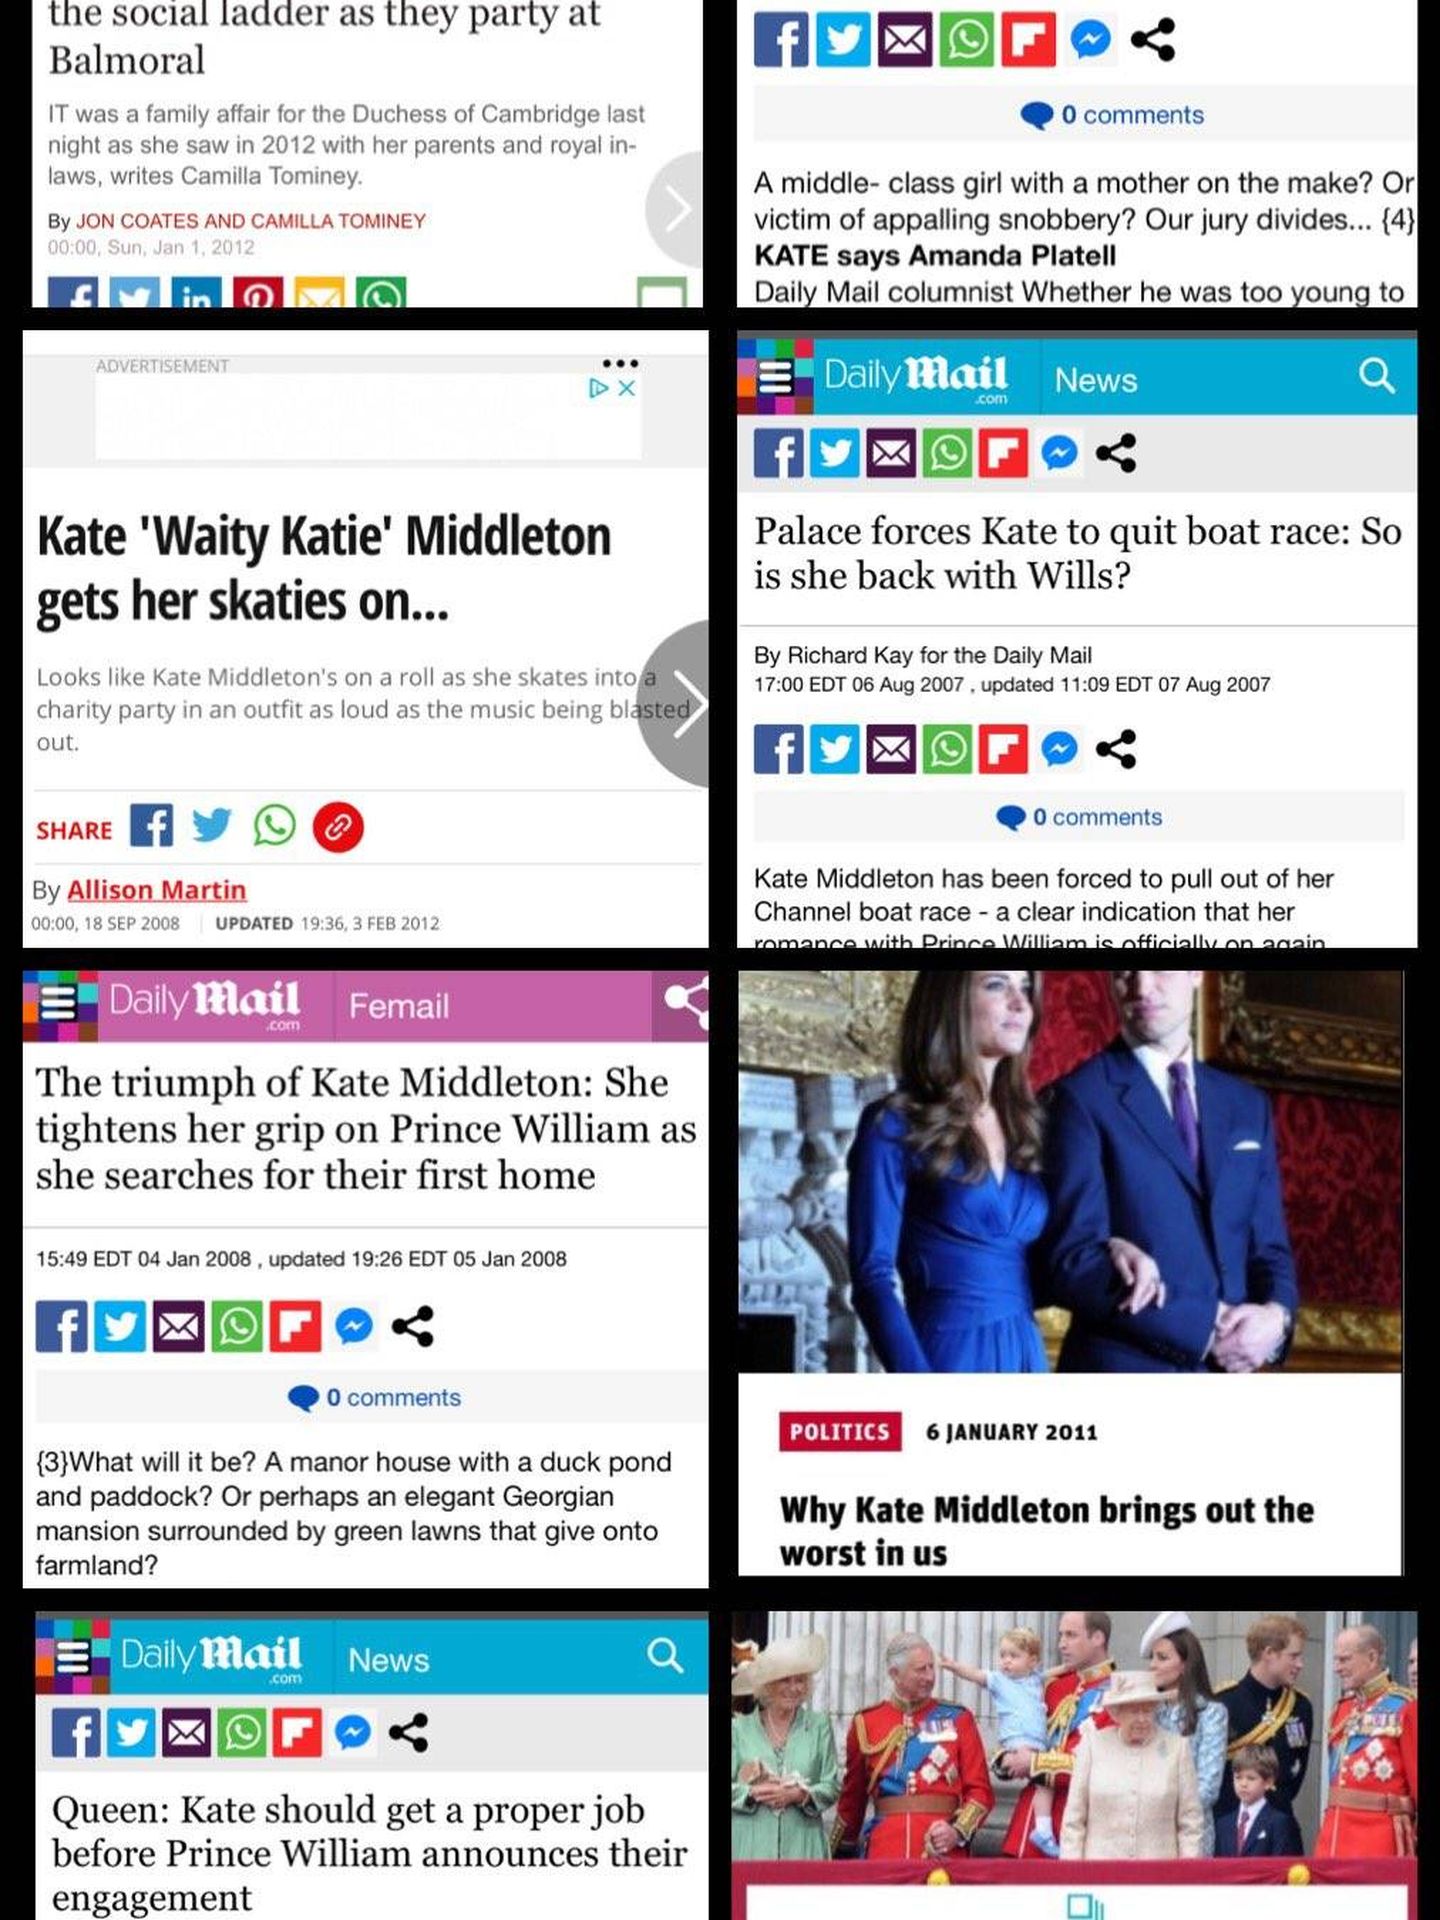 Algunas de las noticias negativas sobre Kate Middleton publicadas en estos años.